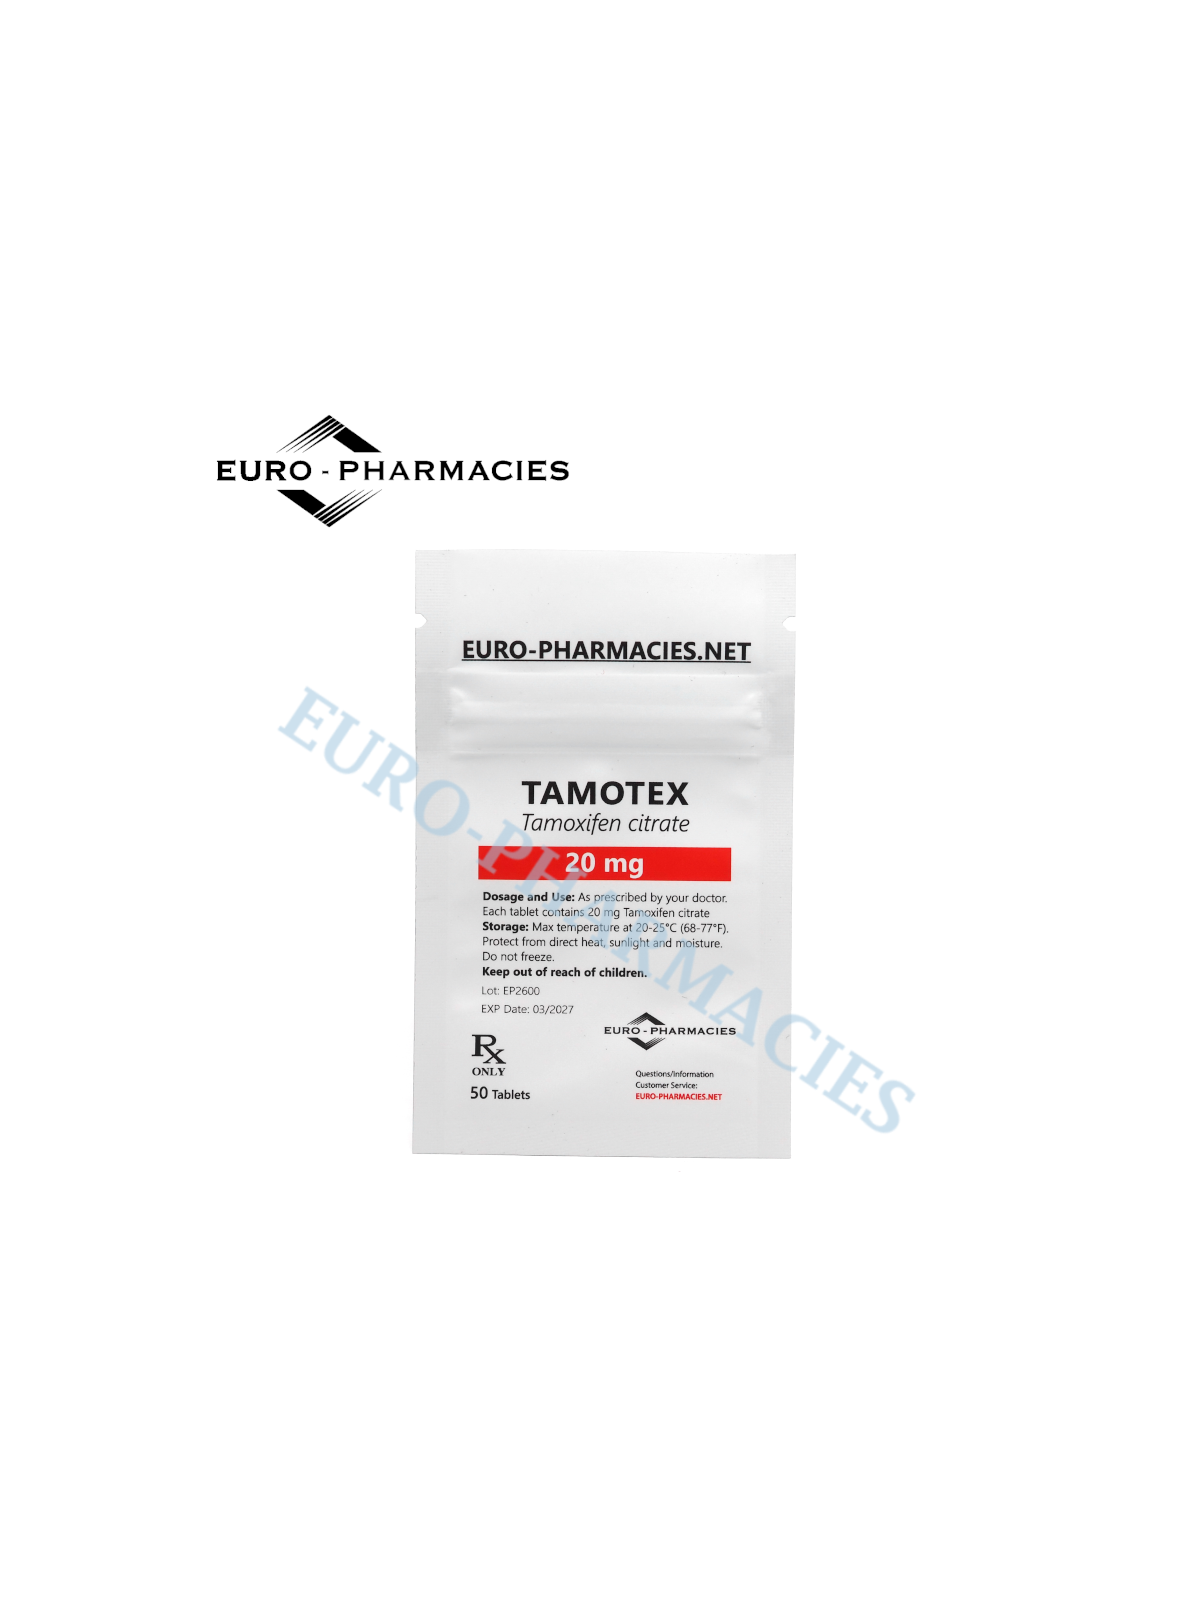 Tamotex (Tamoxifen) - 20mg/tab, 50 pills/bag - Euro-Pharmacies